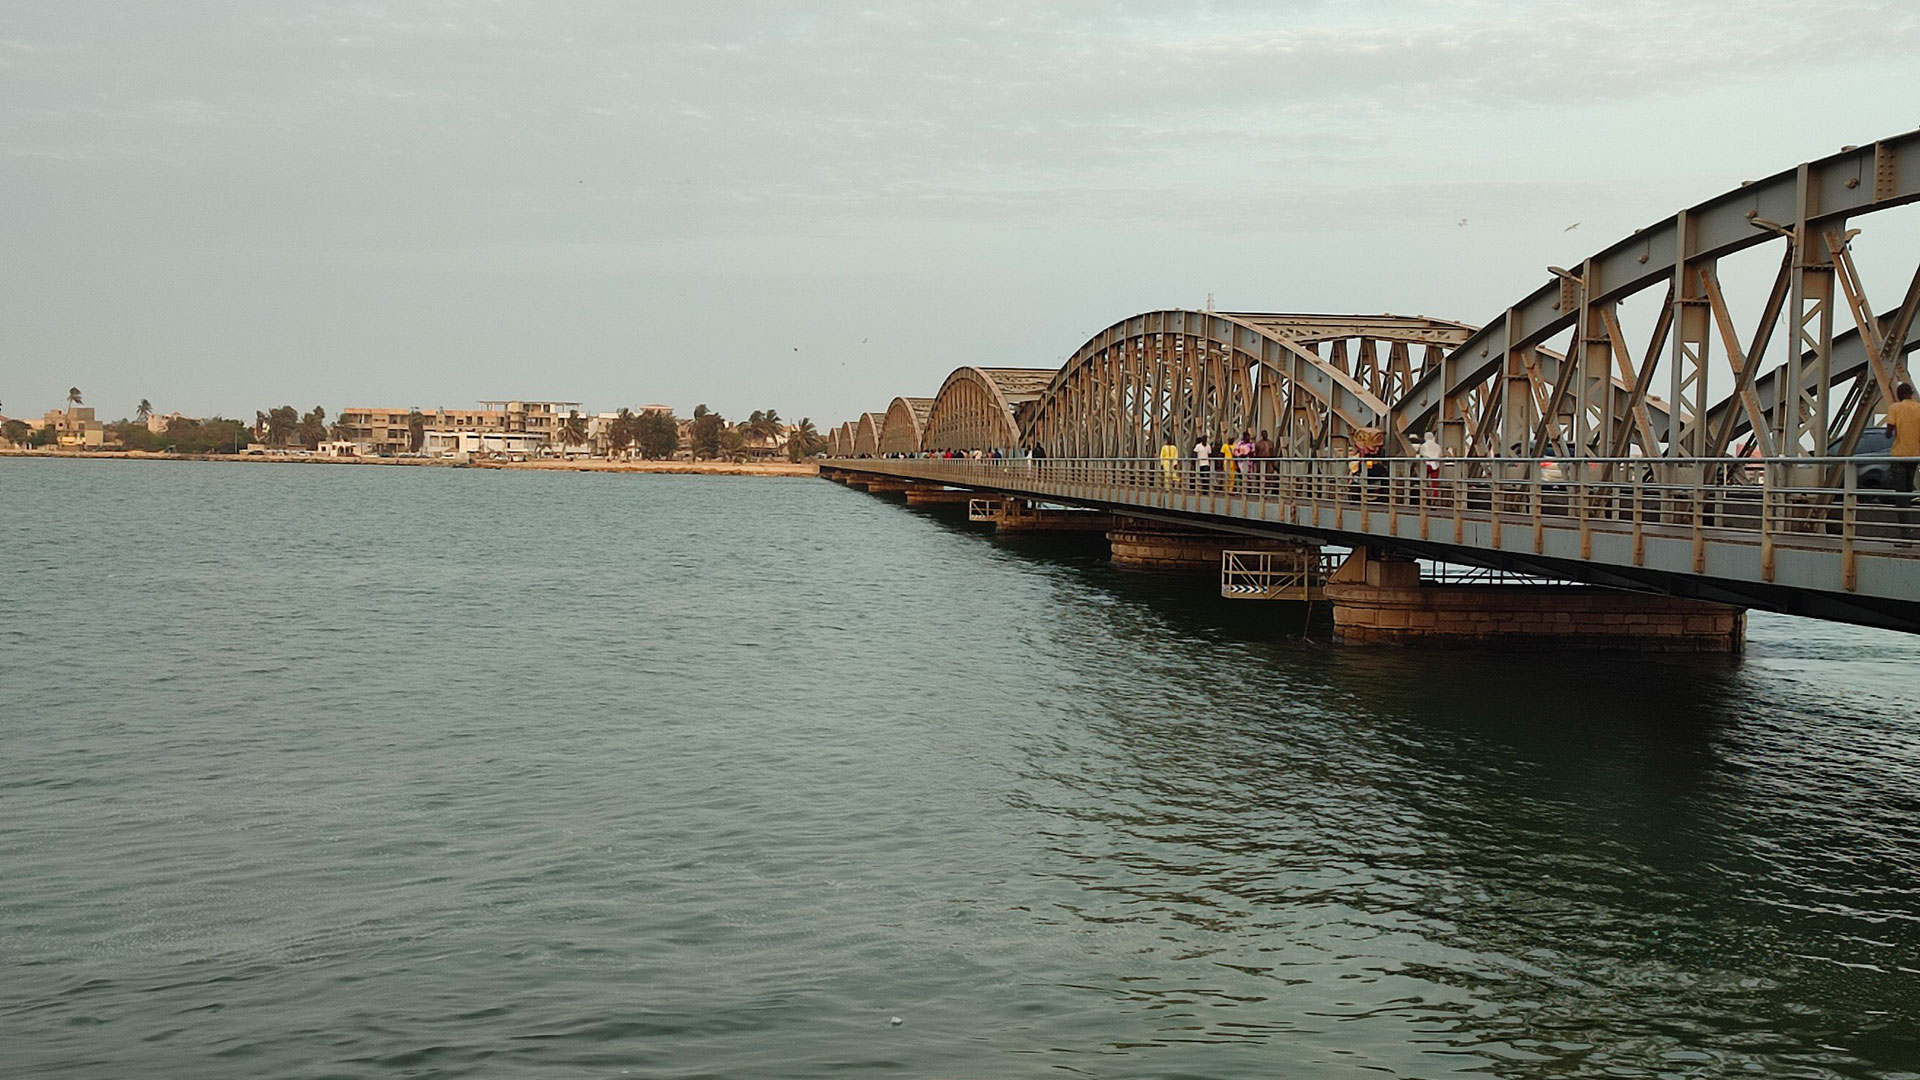 Seul lien entre l’ile de St Louis et le continent, le pont Faidherbe s’avère une infrastructure critique si une inondation le rend impraticable.